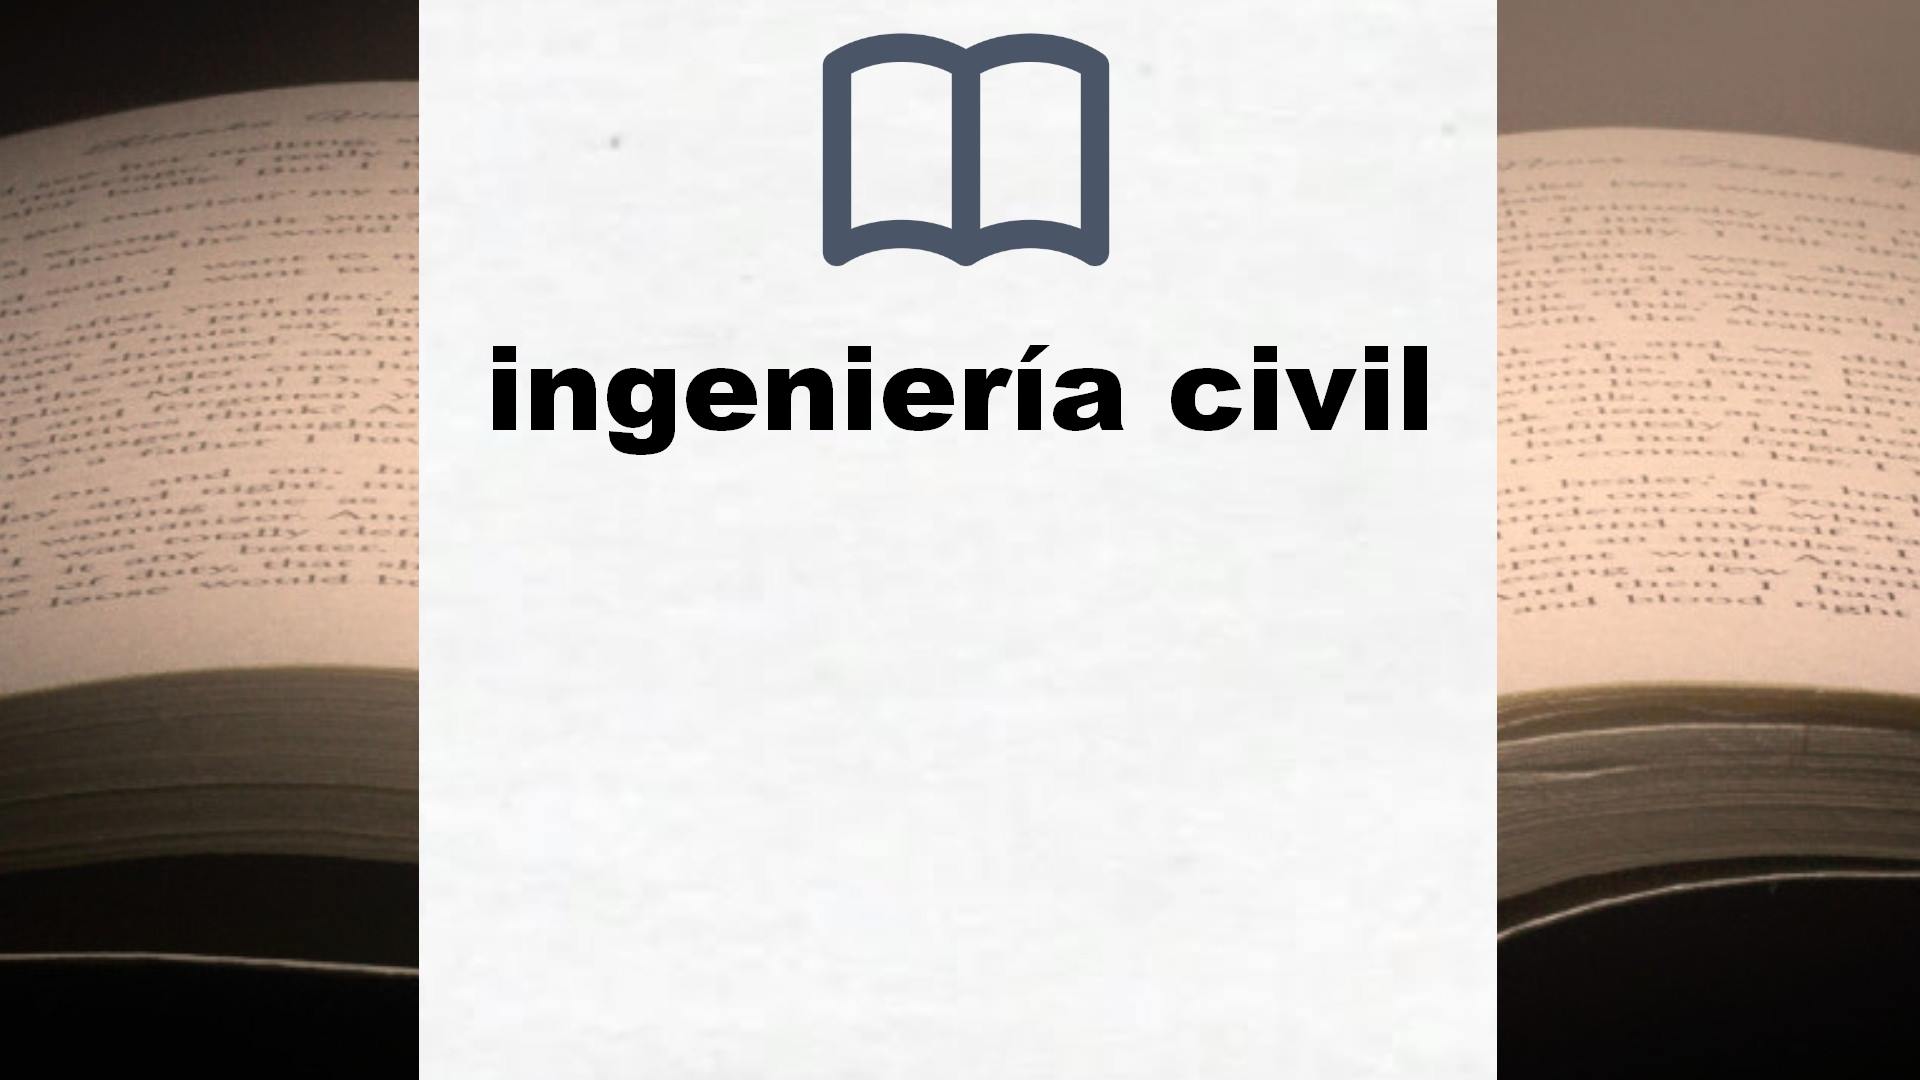 Libros sobre ingeniería civil